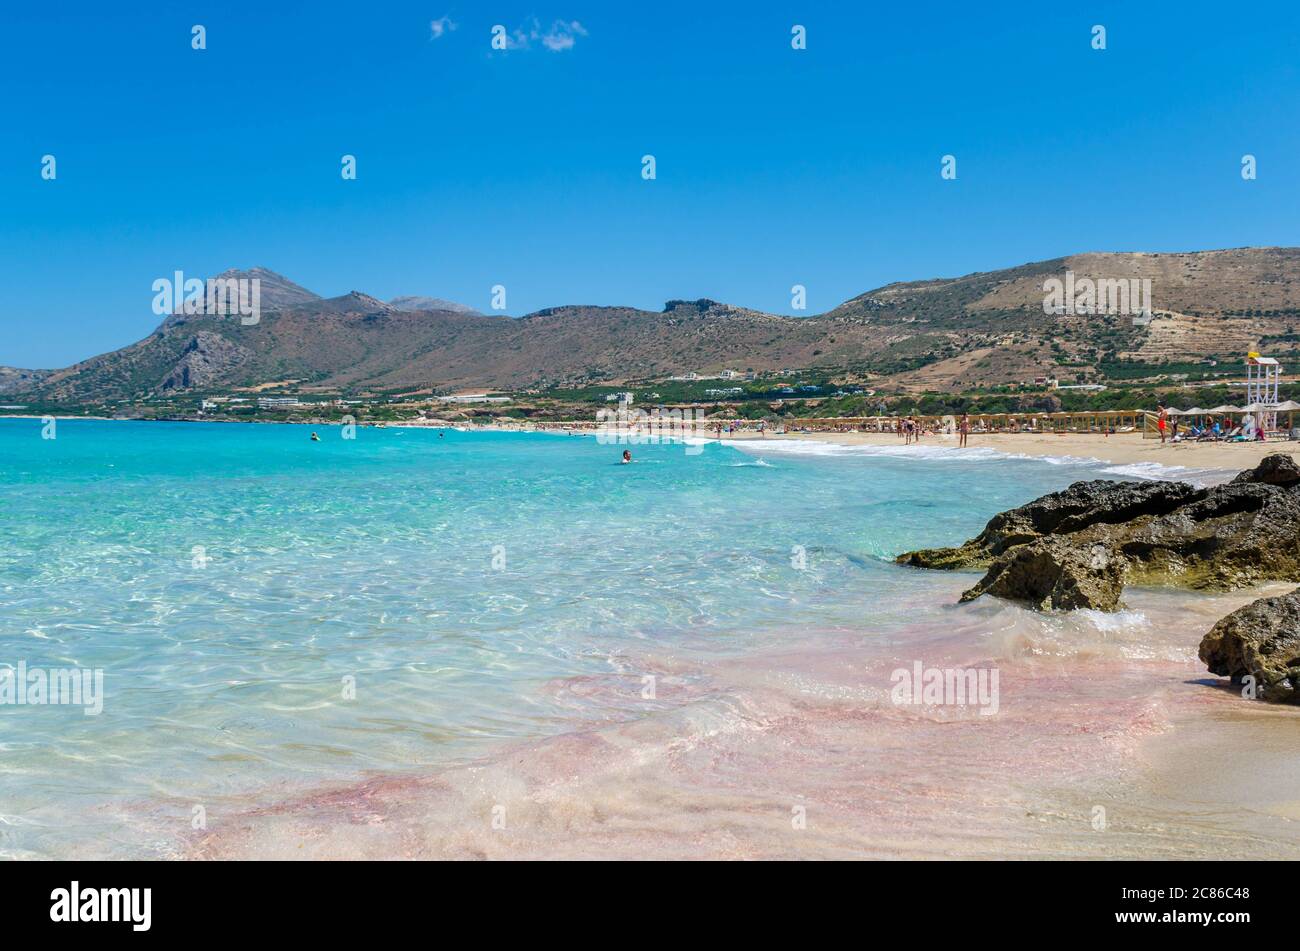 Der Strand Falasarna, einer der berühmtesten Strände Kretas, liegt in der Provinz Kissamos, am nördlichen Rand der Westküste Kretas. Stockfoto